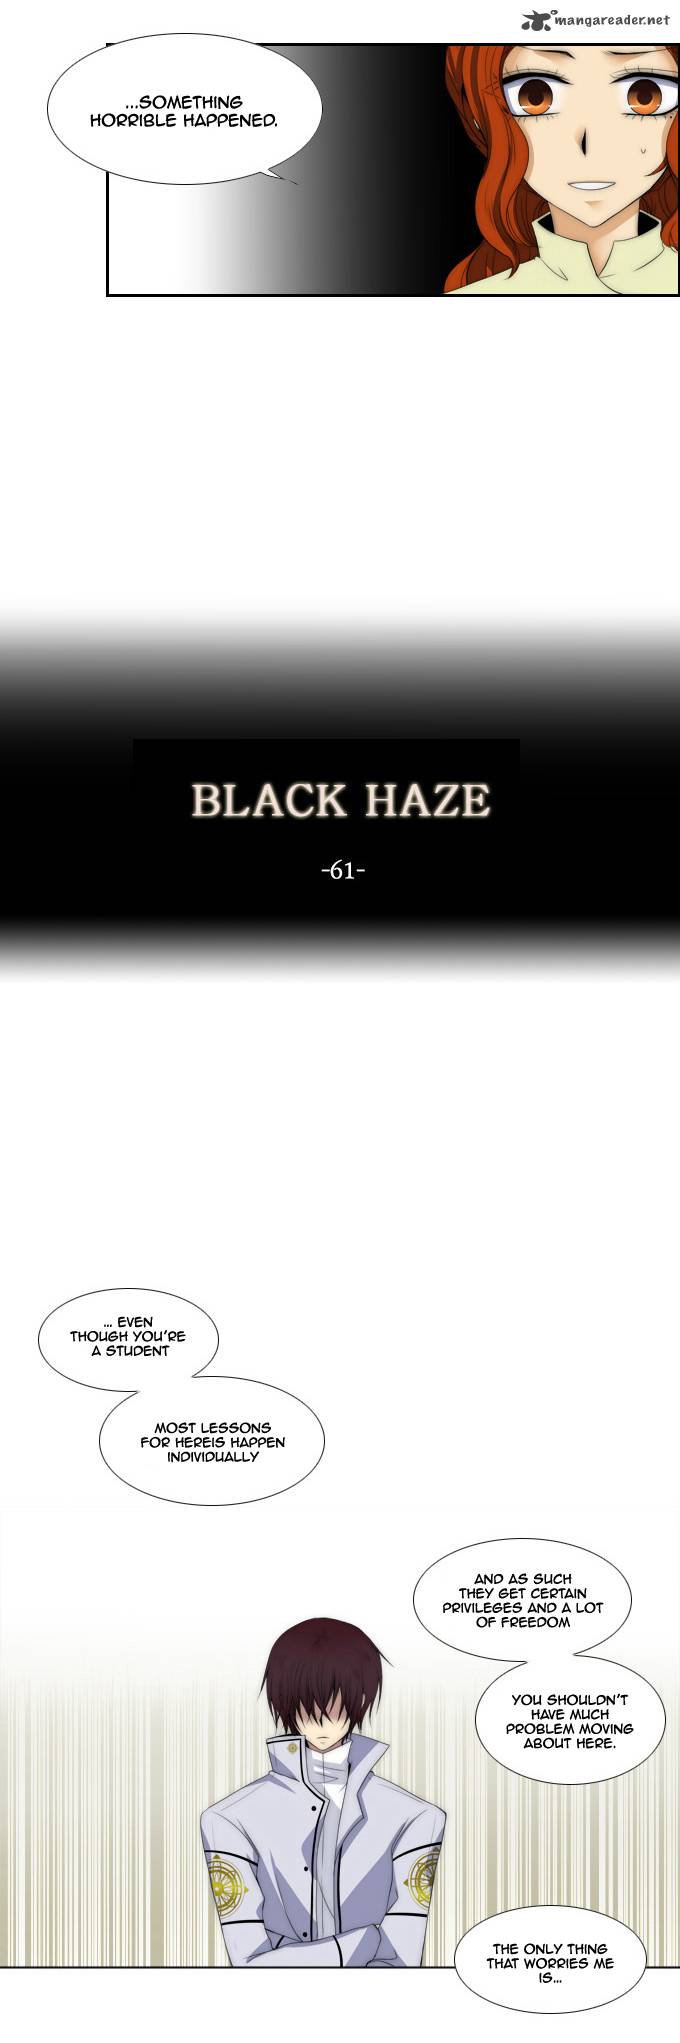 Black Haze 61 3